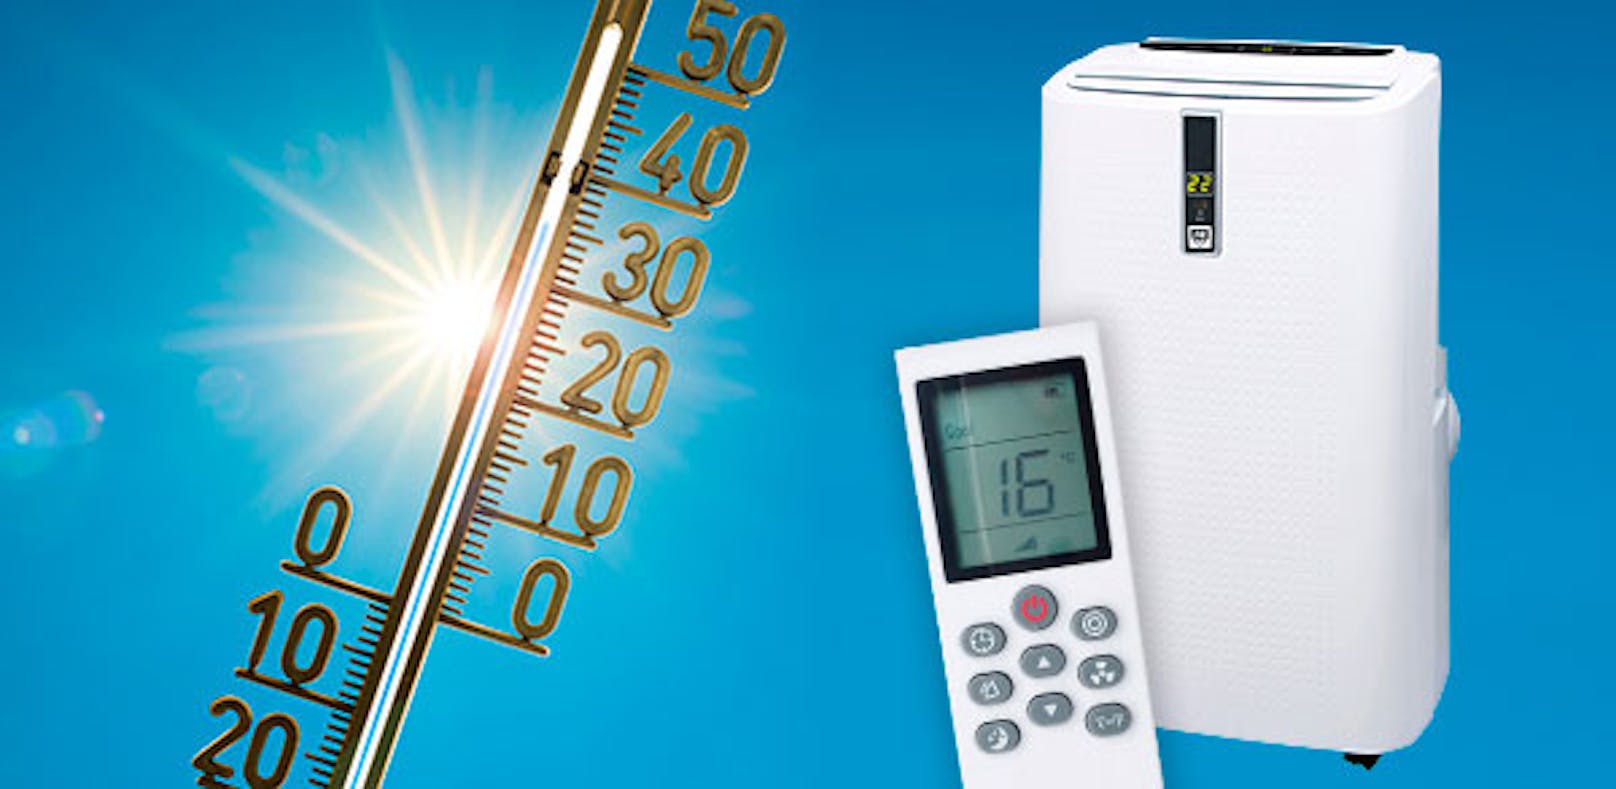 Genau das richtige Rezept gegen heiße Sommertage: Mit etwas Glück kannst du nun eine Monoblock-Klimaanlage von Conrad Electronic gewinnen.